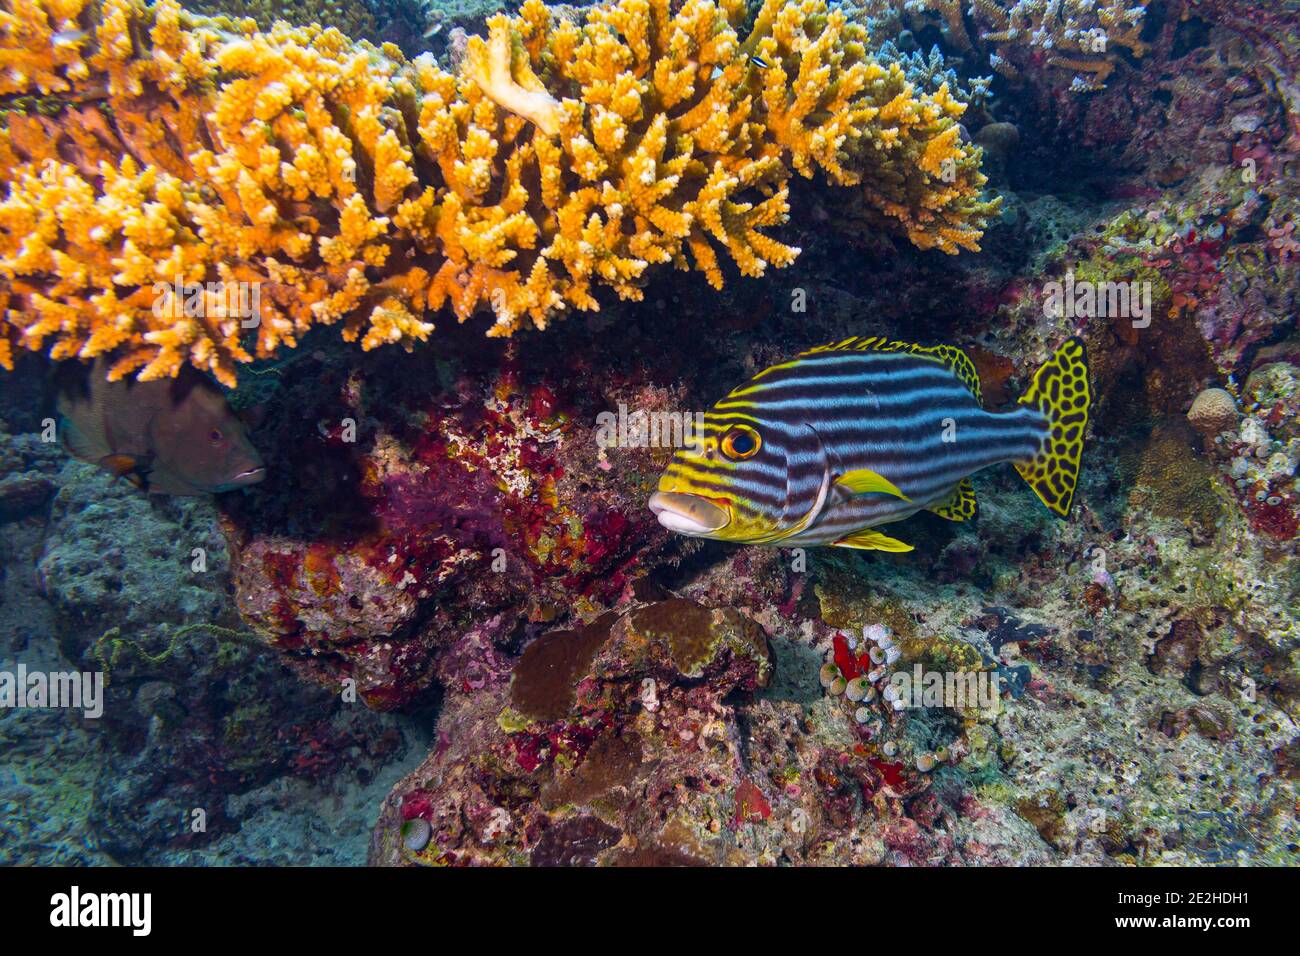 Plectorhinchus vittatus oder der gelbe indische Ozean orientalische Süßlippen Fische in bunten Unterwasser-Korallenriff. Meerestiere Tierwelt Ozean Meer backgro Stockfoto